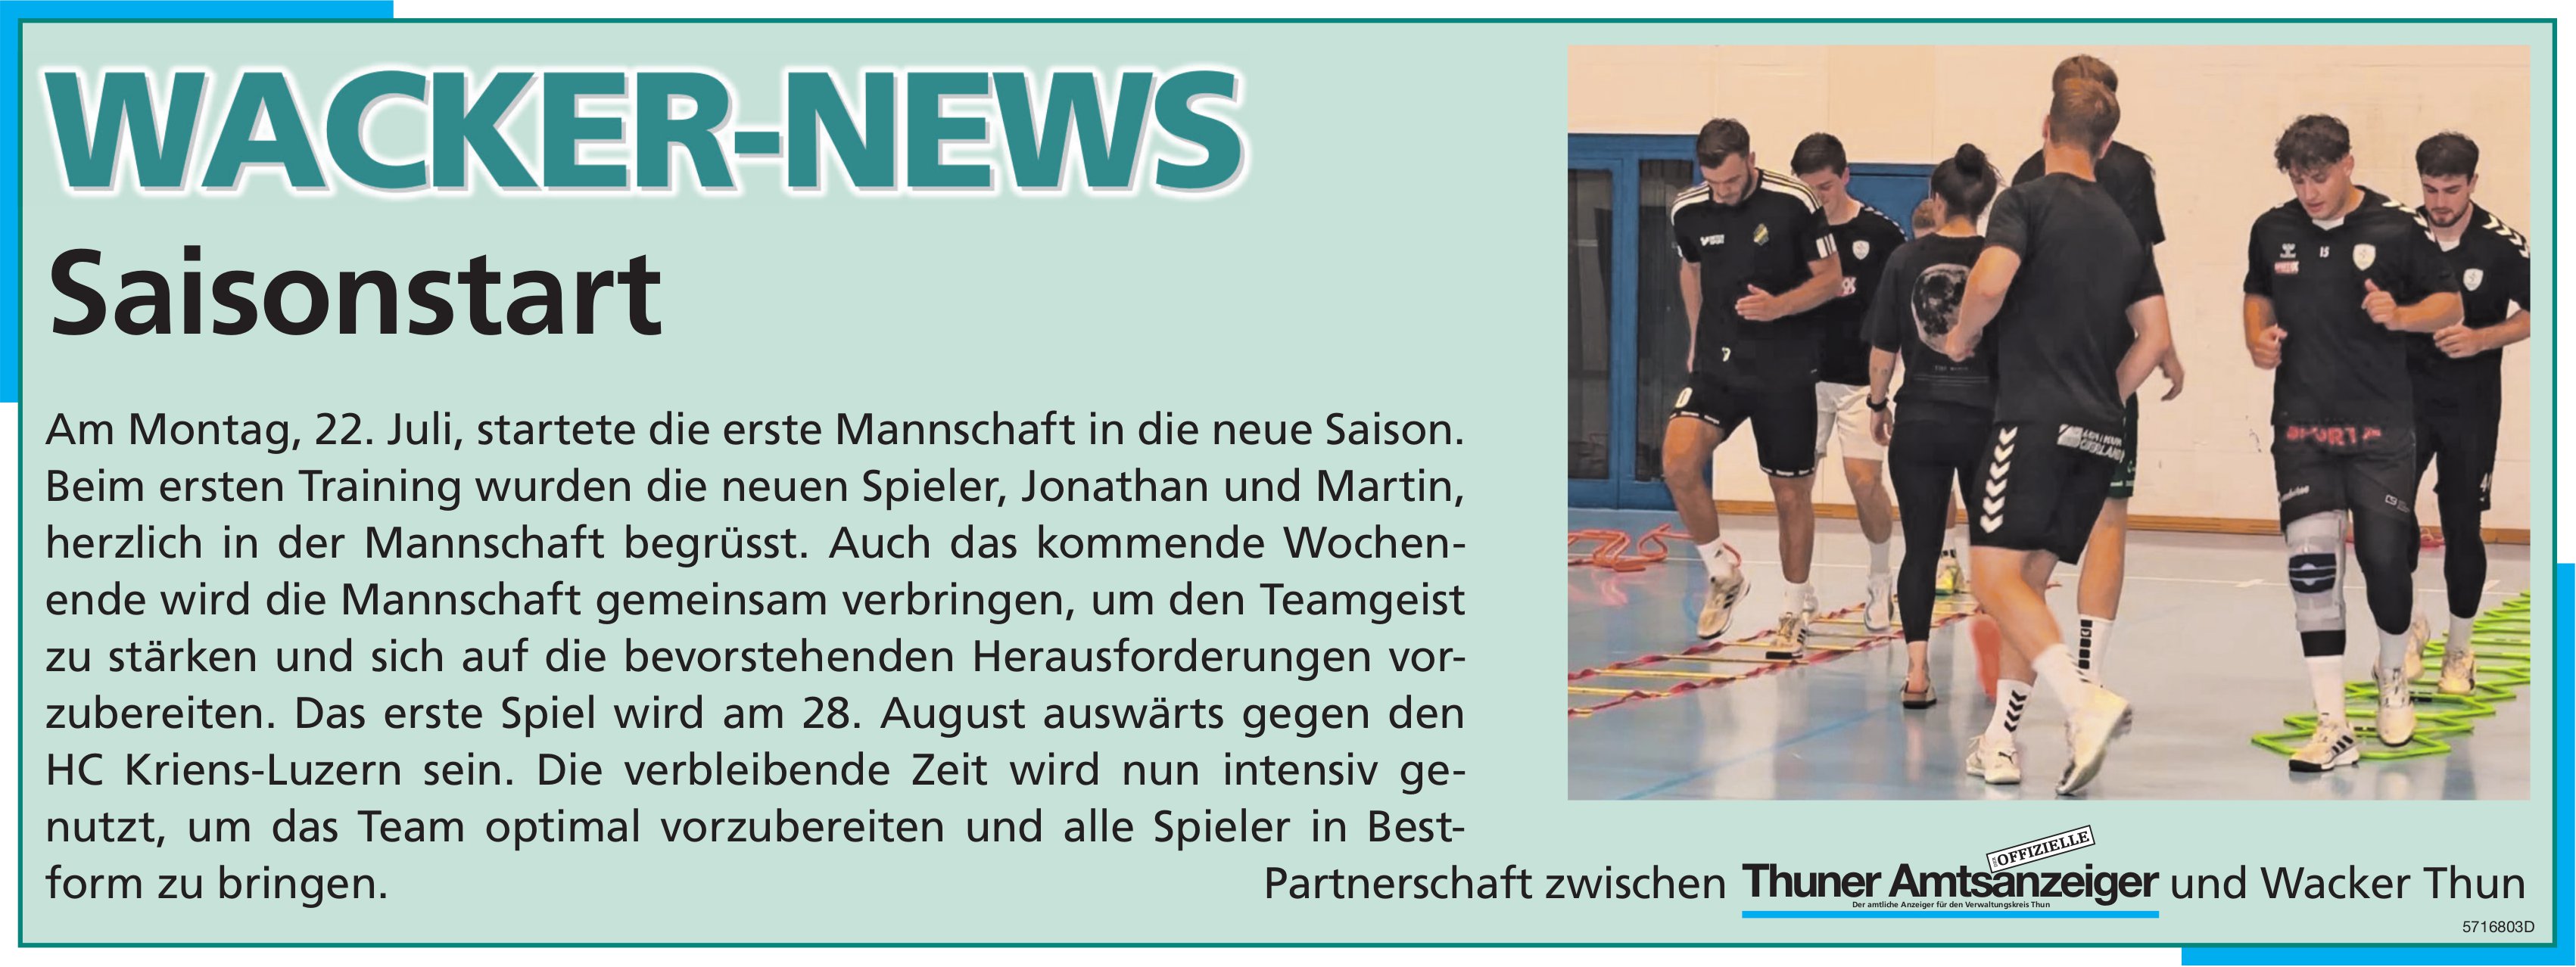 Thuner Amtsanzeiger / Wacker Thun, Wacker-News: Saisonstart